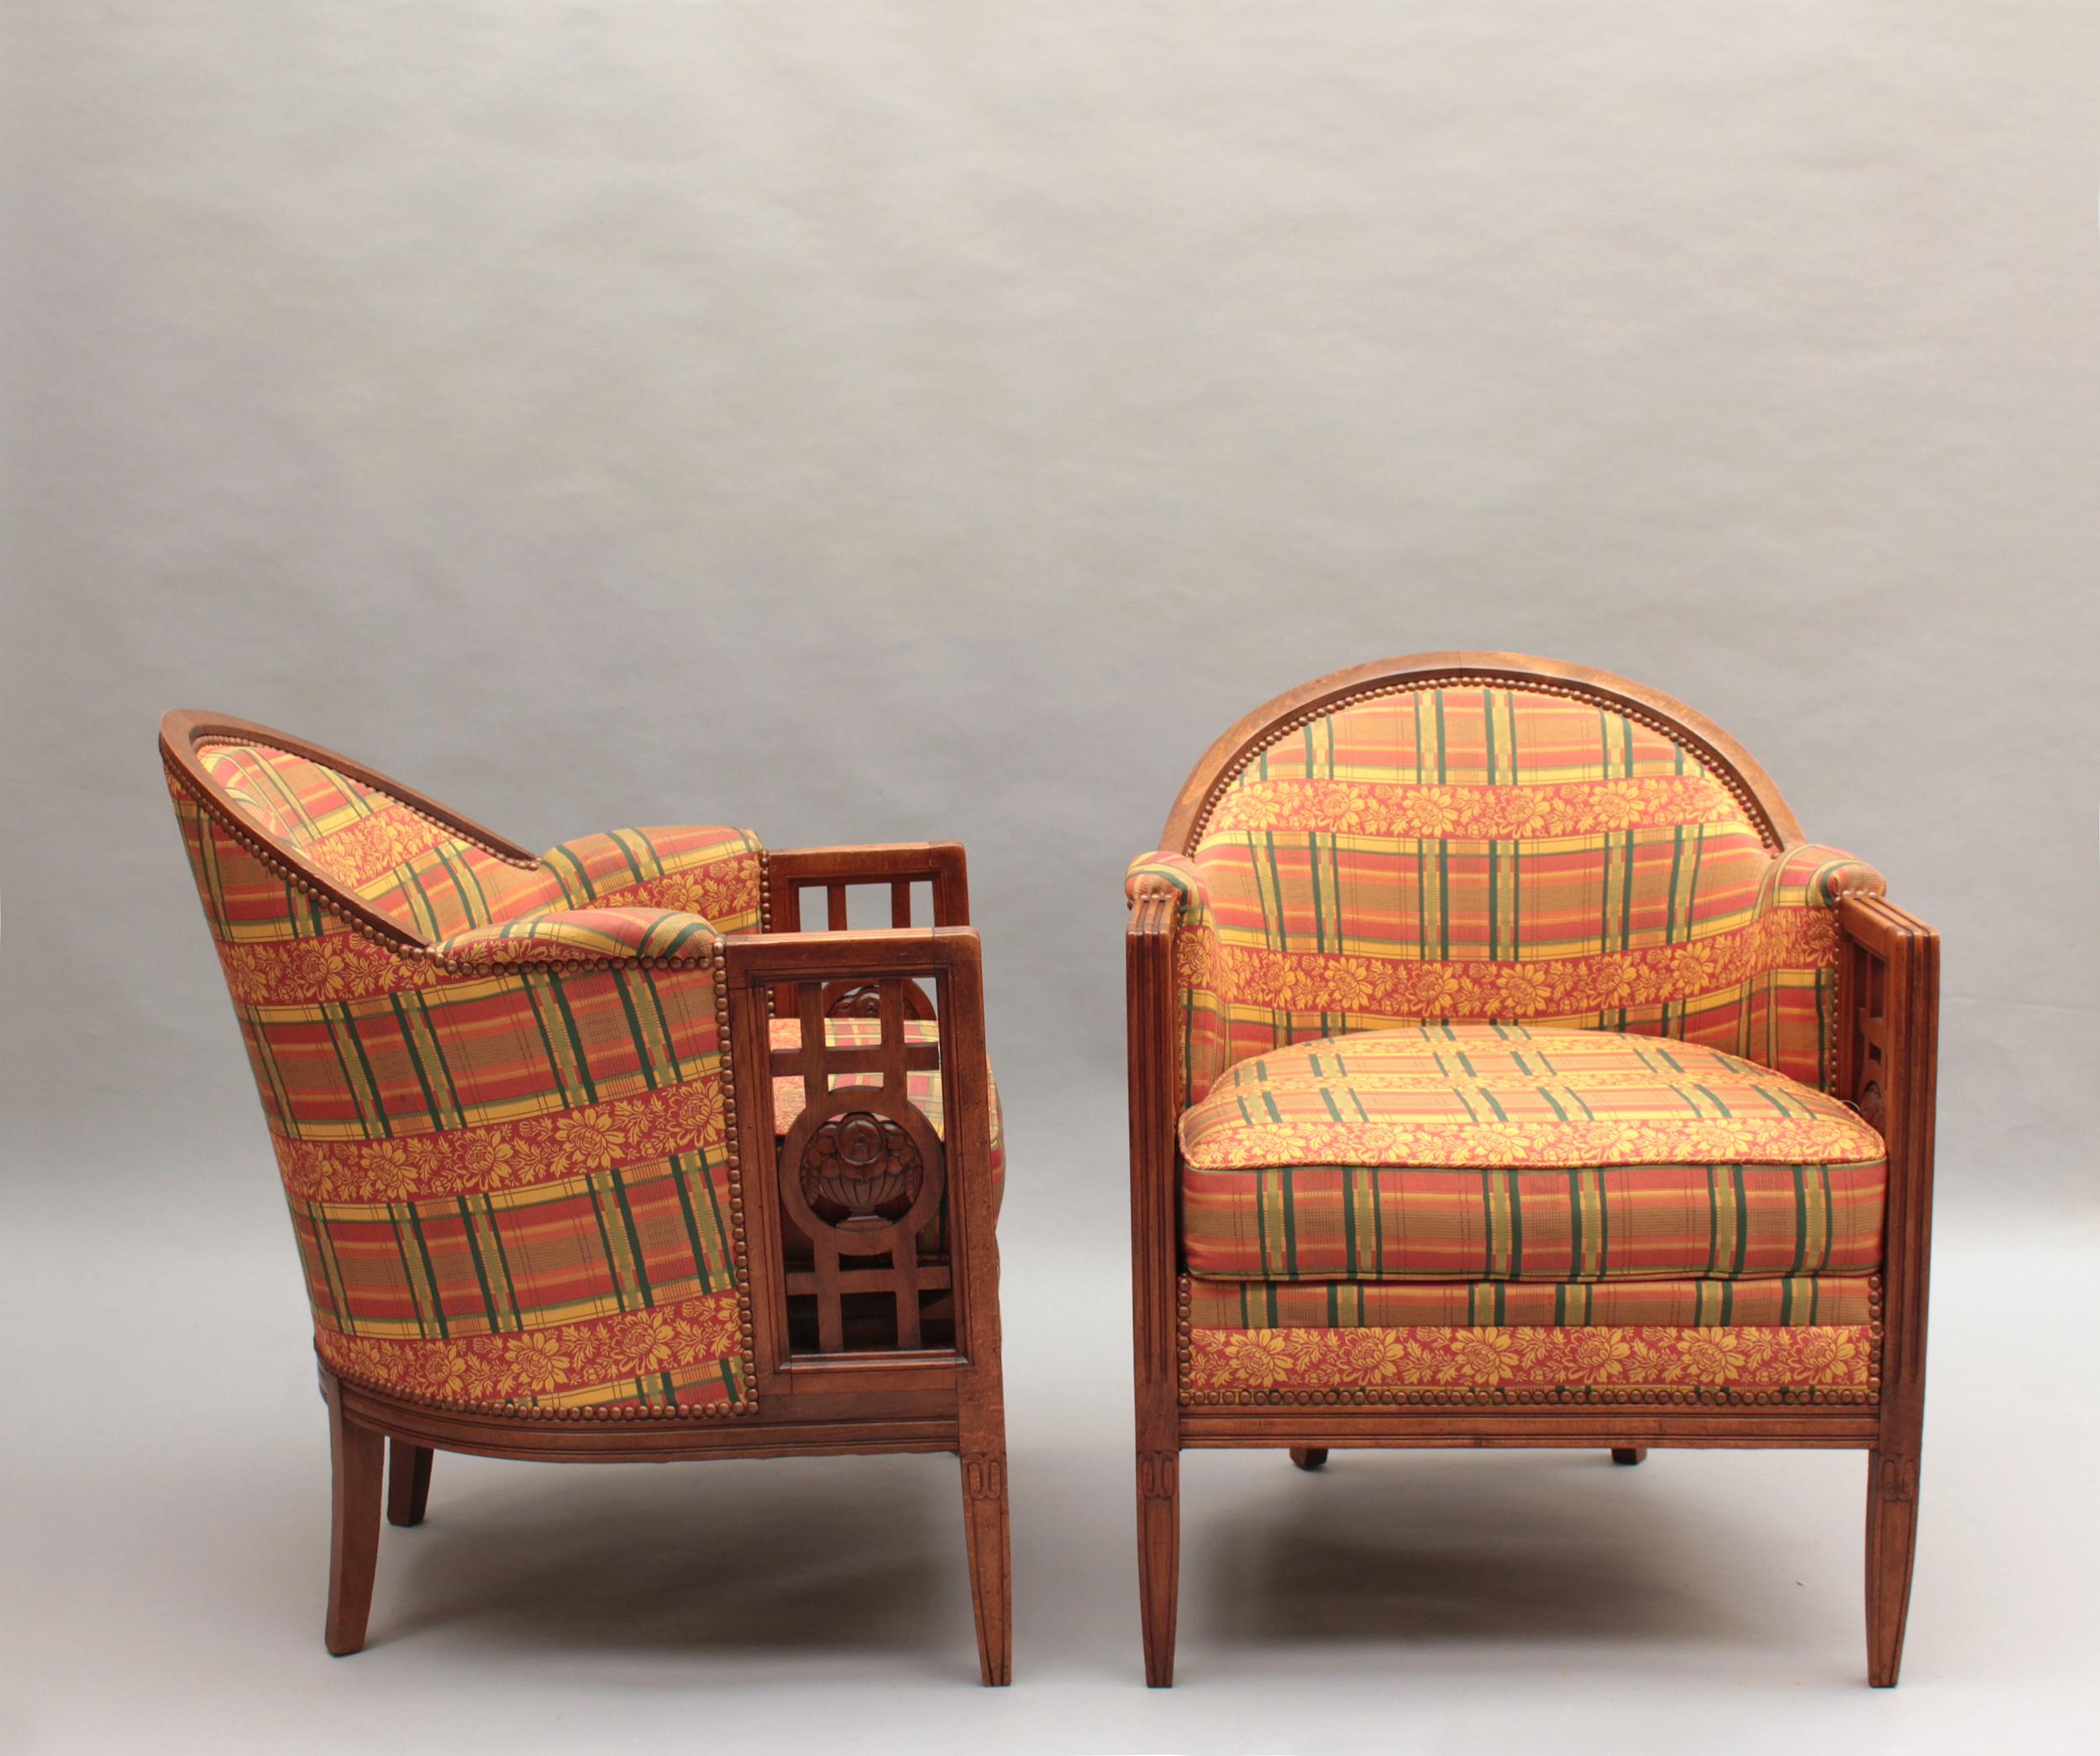 Paul Follot (1877 - 1941) - Paire de fauteuils à structure en hêtre de style Art Déco, ajourés de chaque côté d'un motif floral.

Bibliographie : 